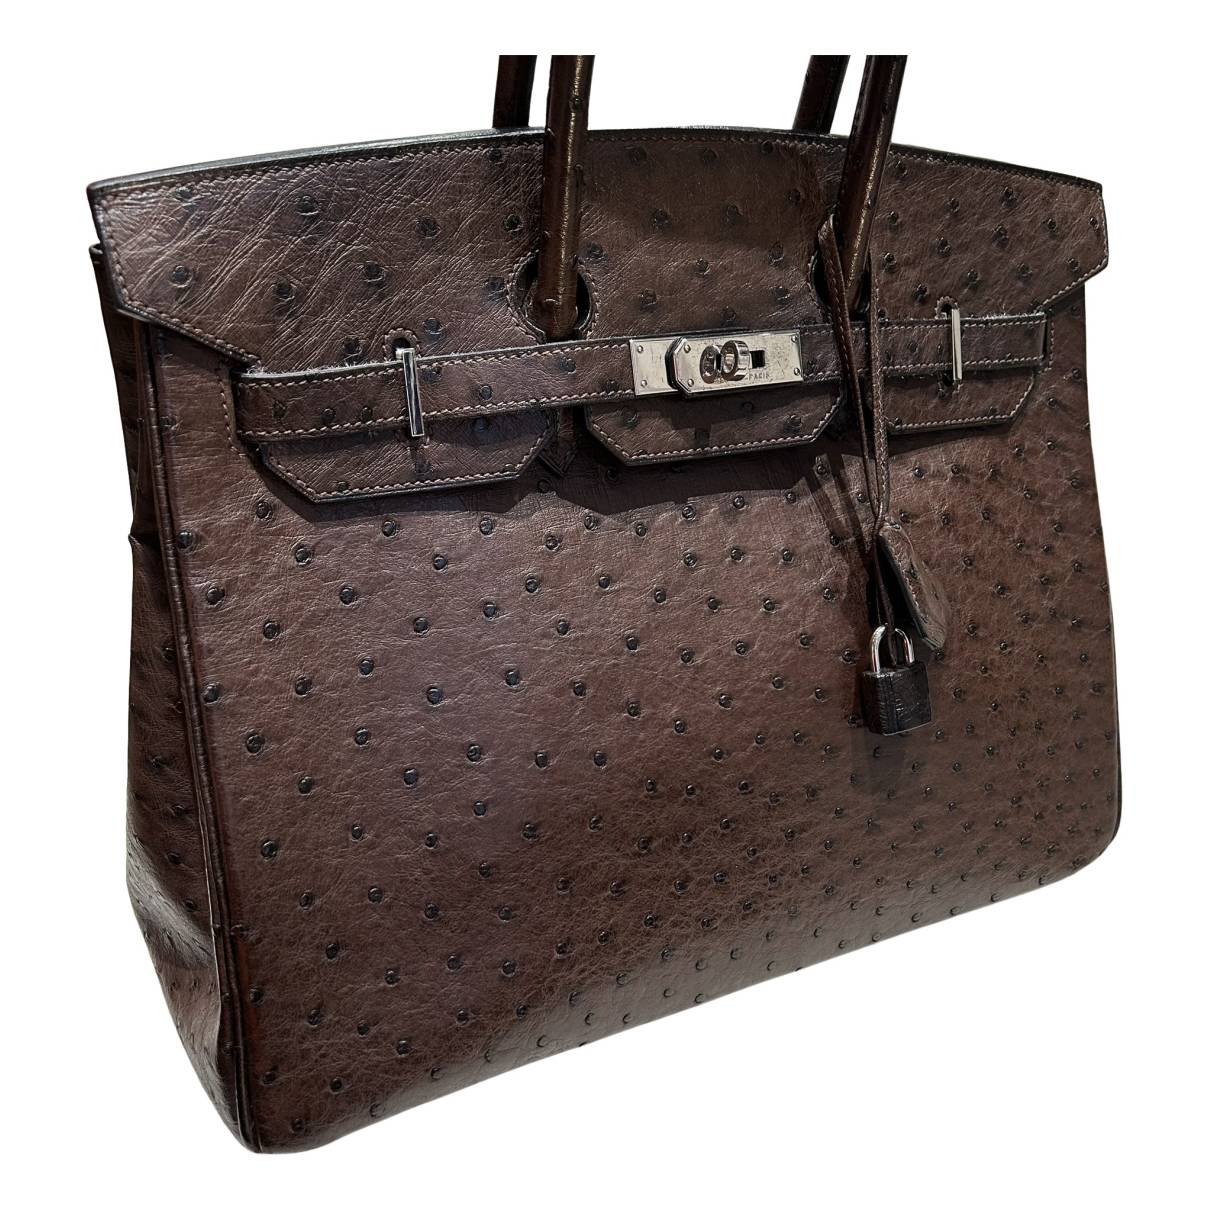 HERMÈS Limited Edition Ostrich Birkin 35 handbag in Brown and